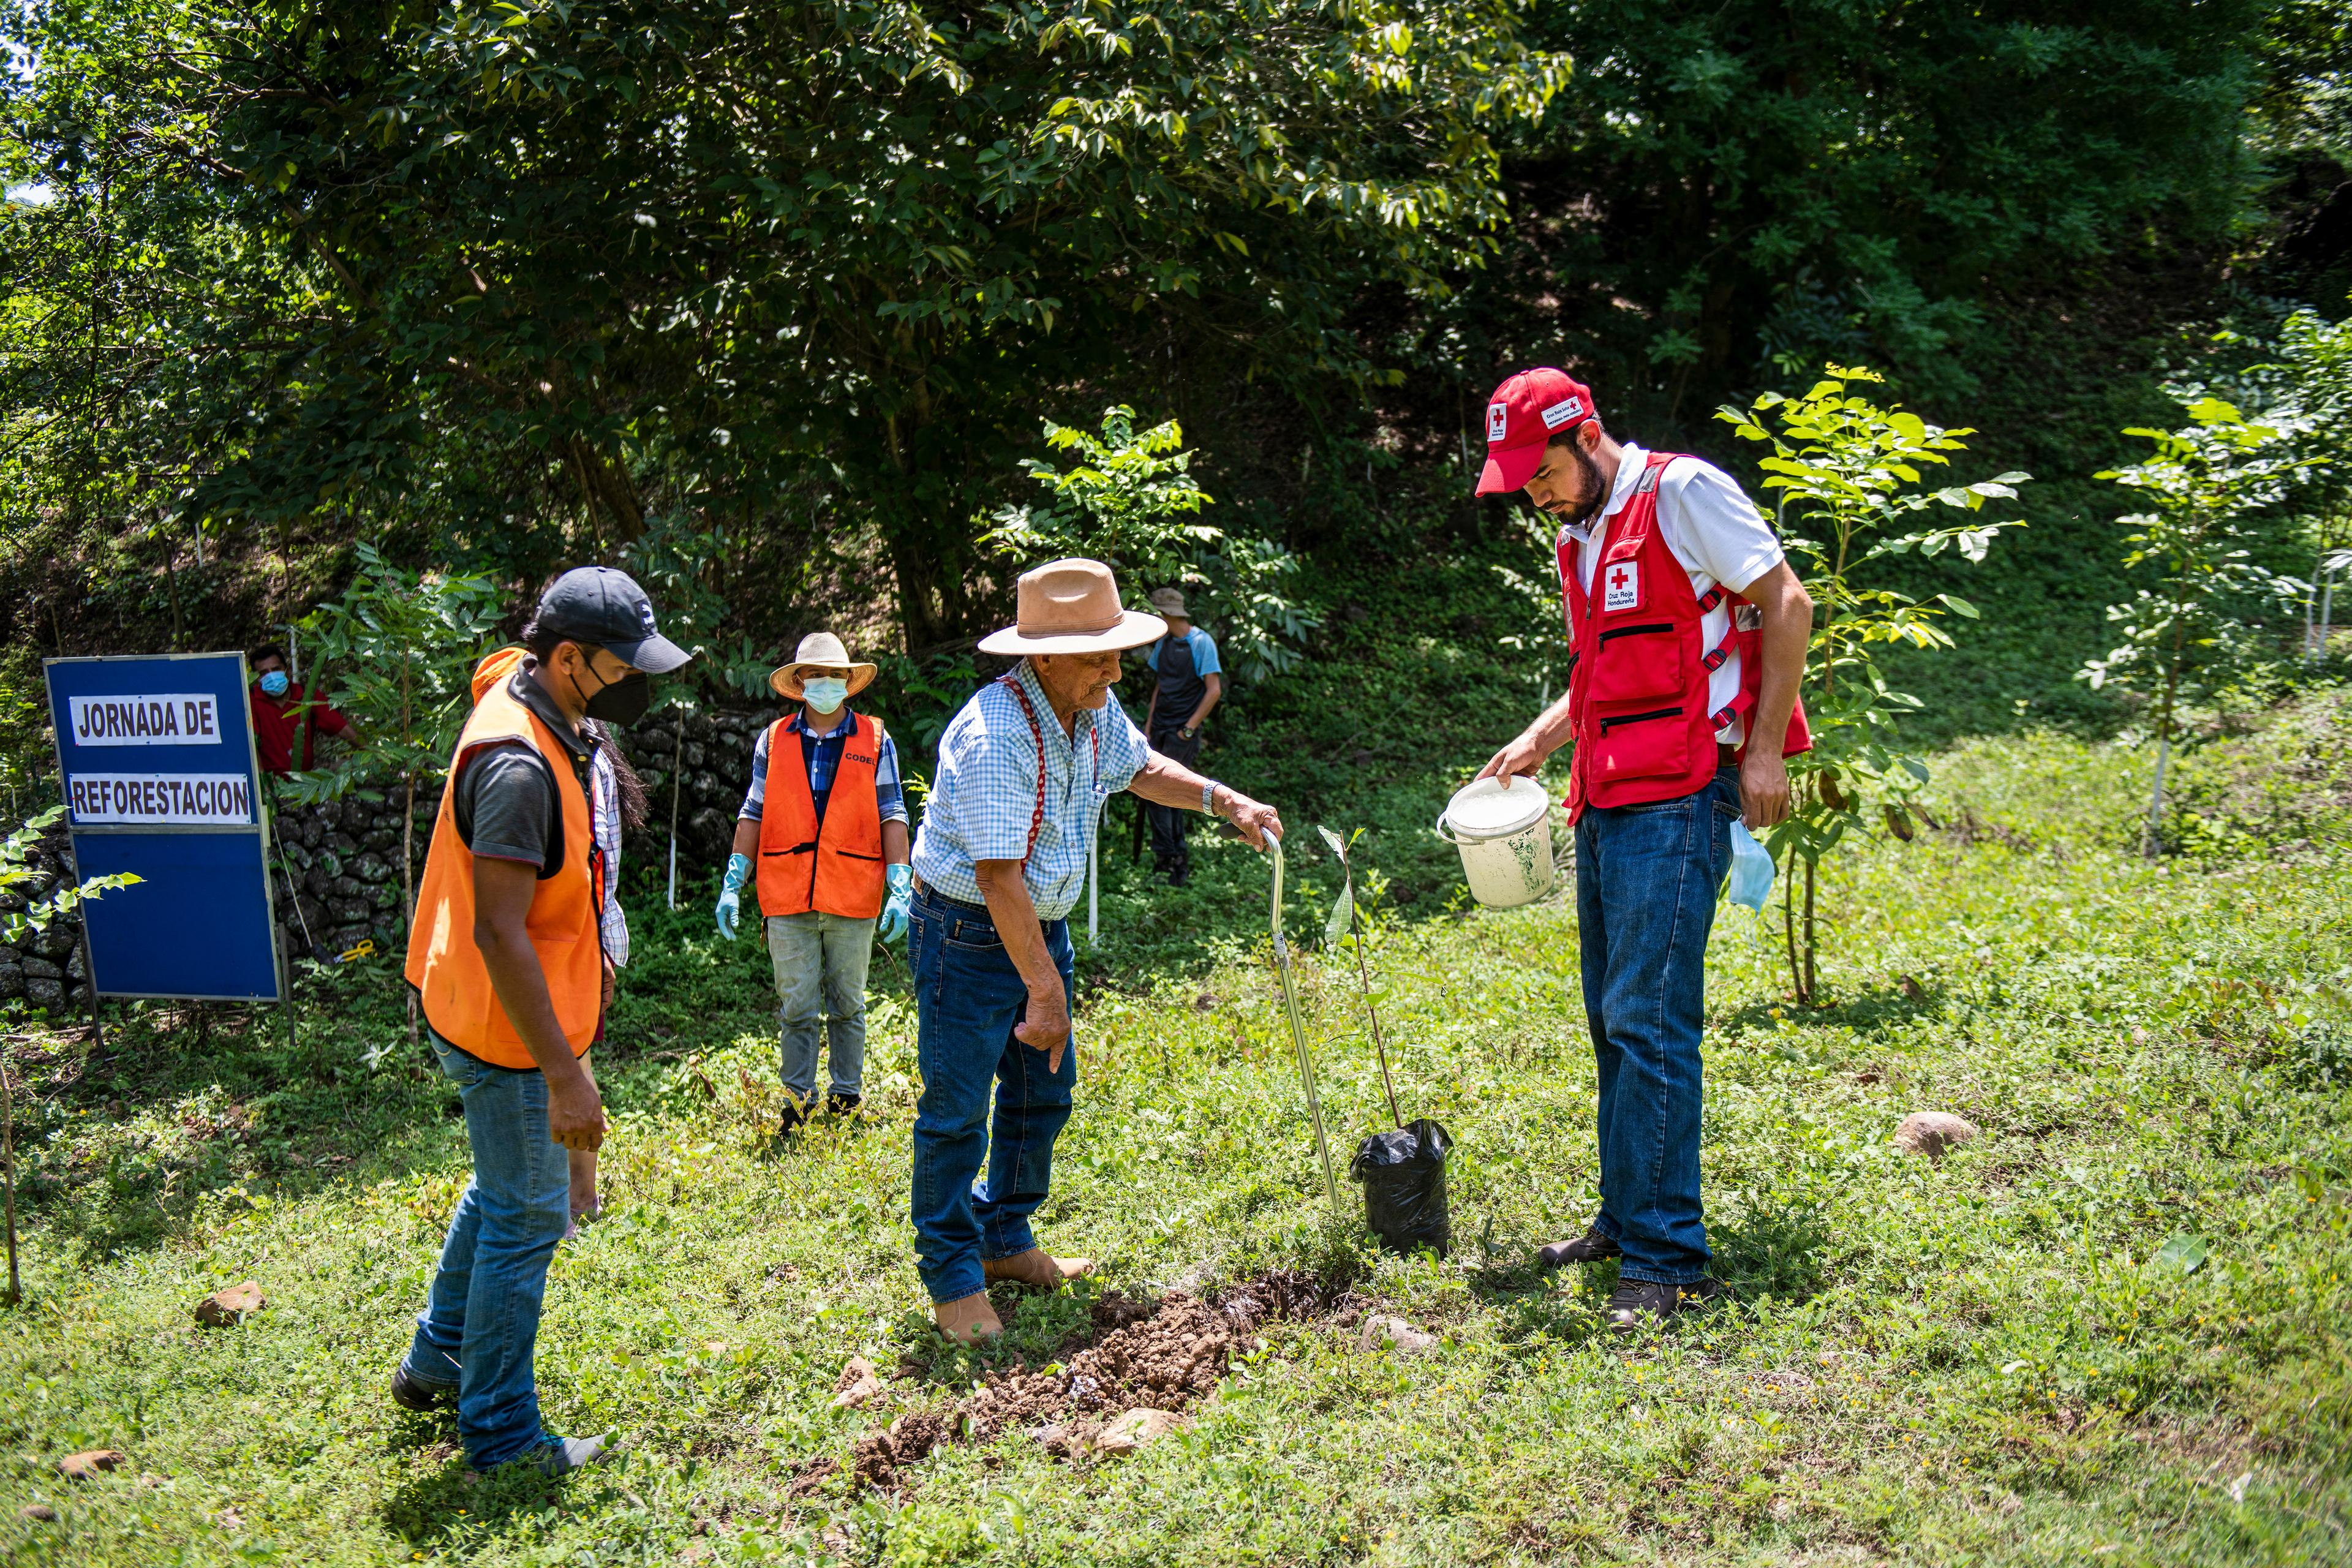 Several men plant tree seedlings on a hillside in Honduras.